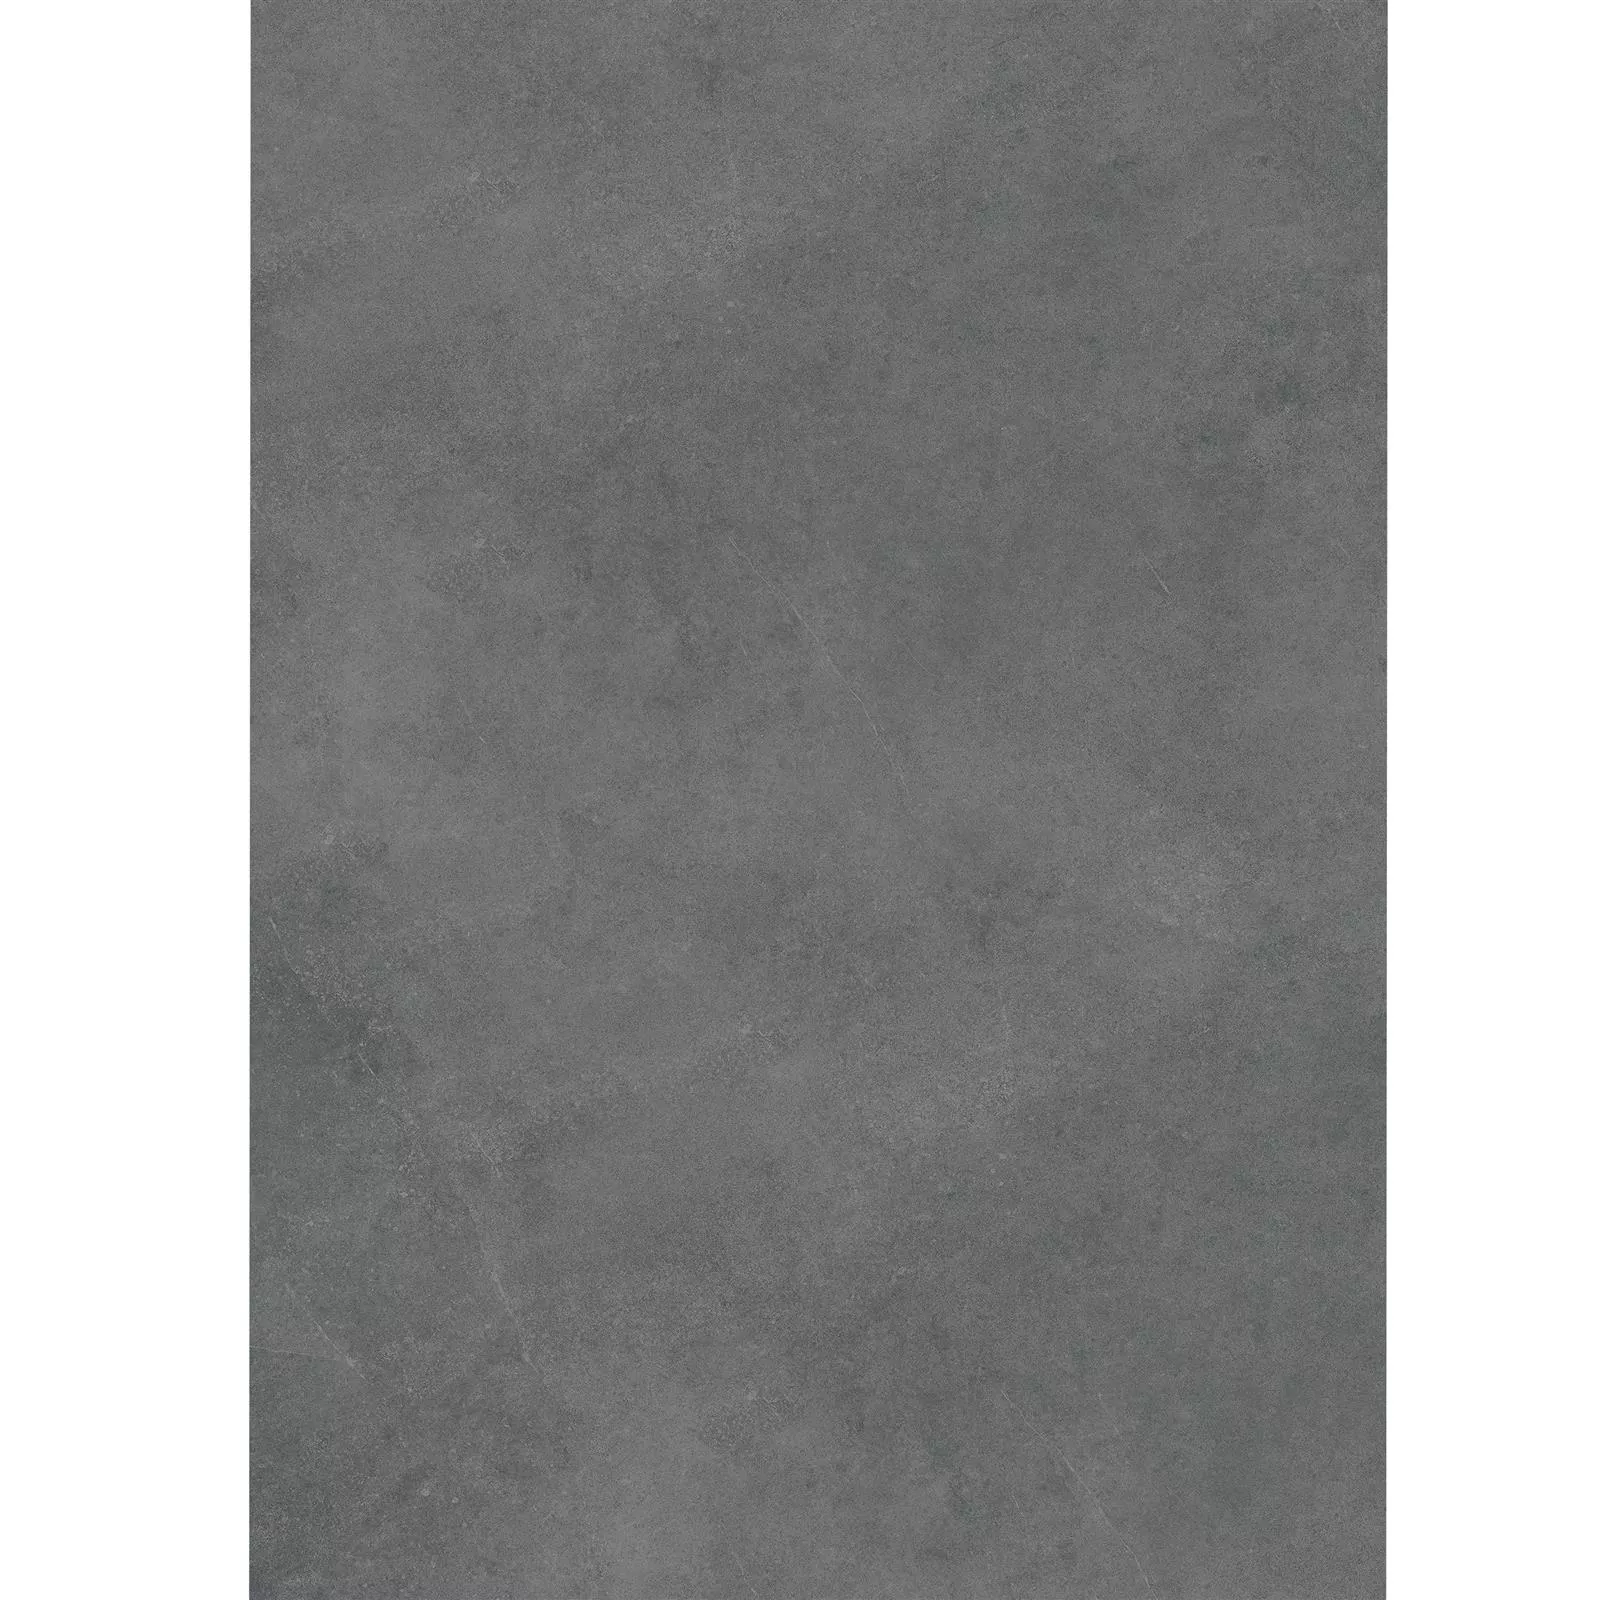 Terrassenplatten Zement Optik Glinde Anthrazit 60x120cm